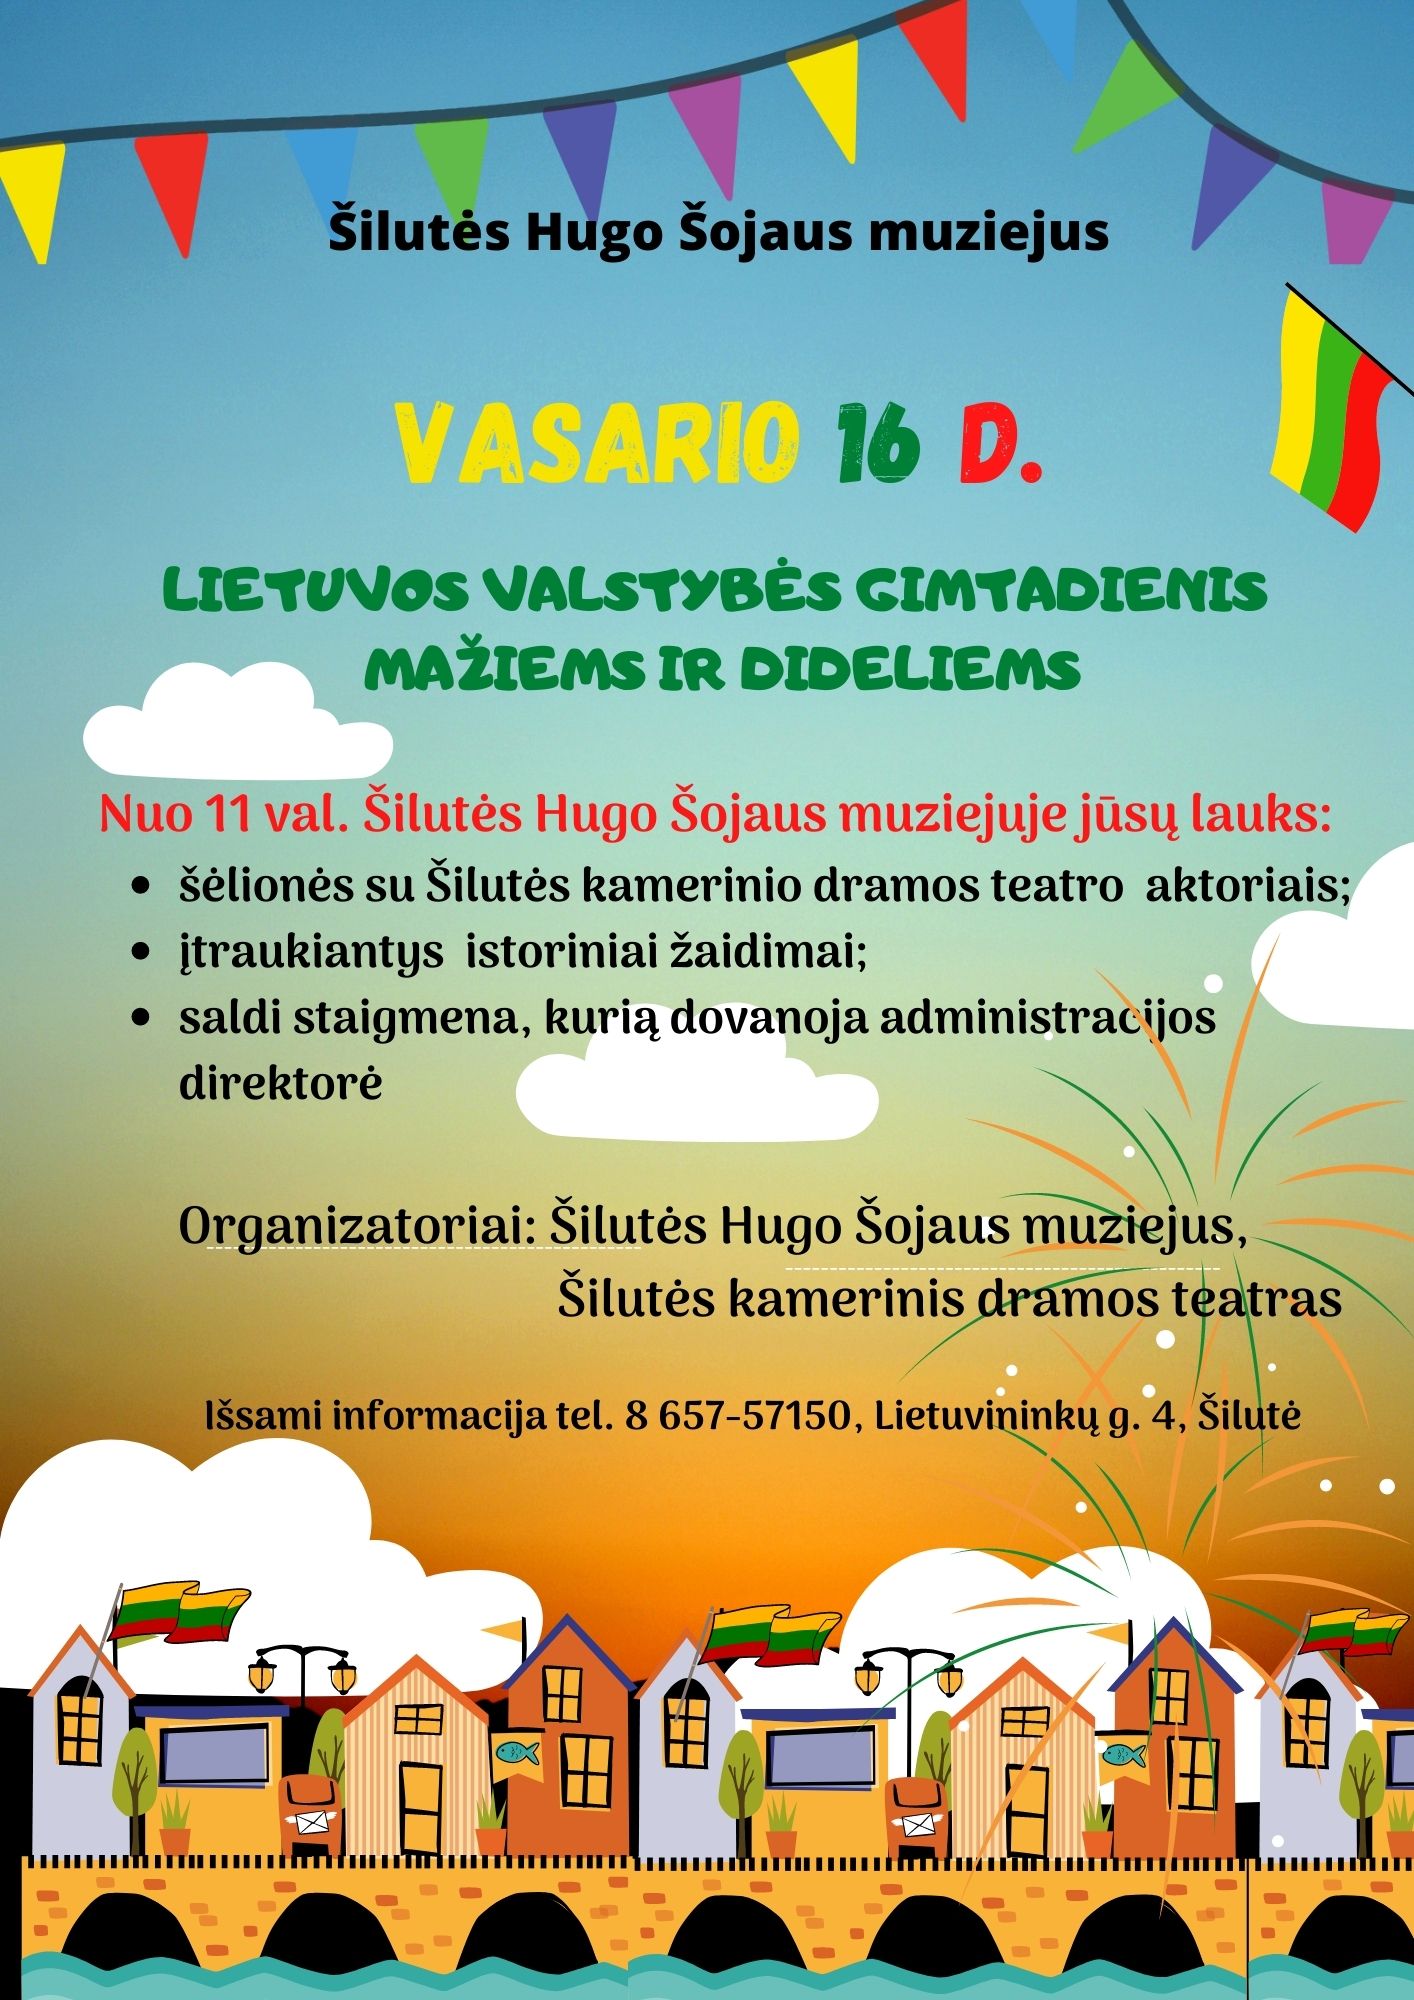 Vasario 16 d. kviečiame švęsti Lietuvos valstybės gimtadienį kartu!